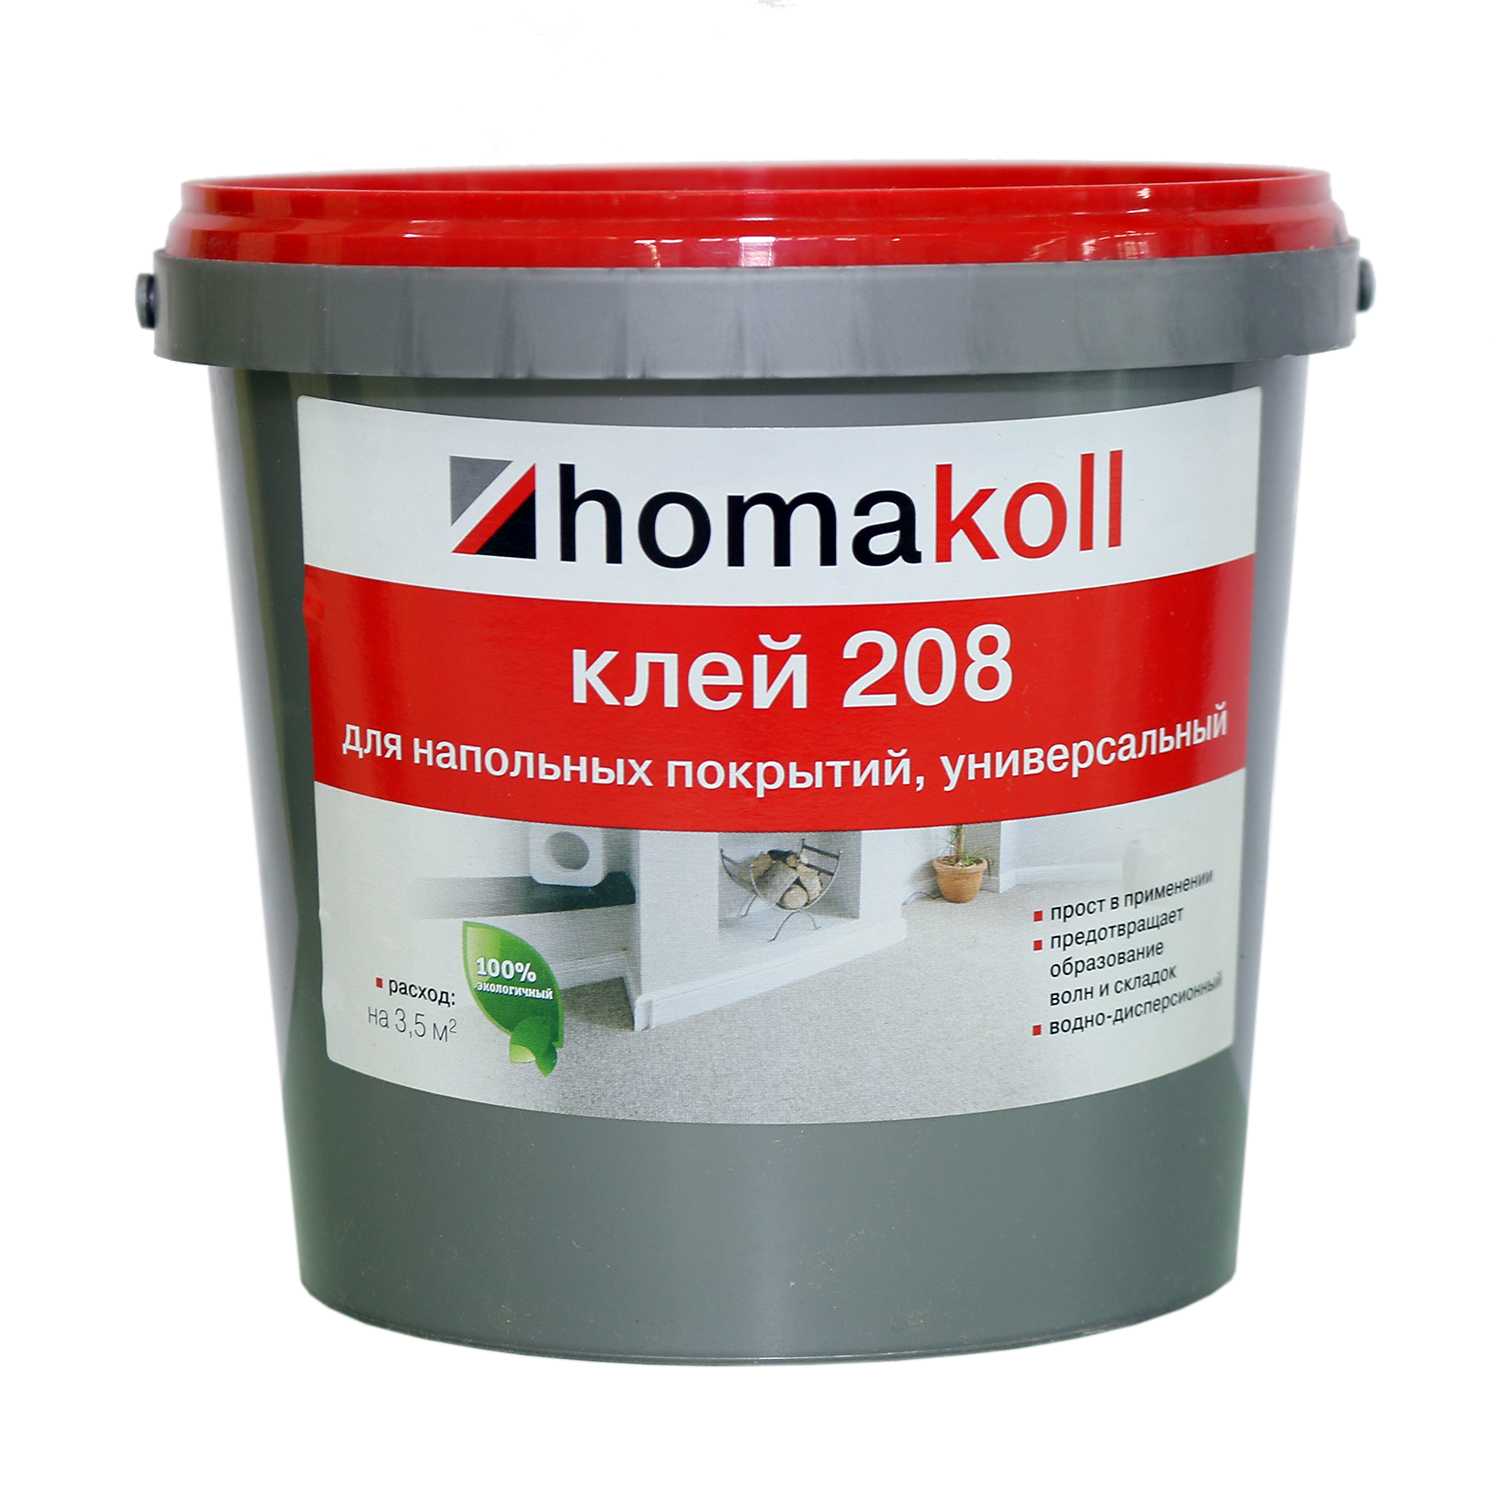 Клей homakoll 208 (7 кг)